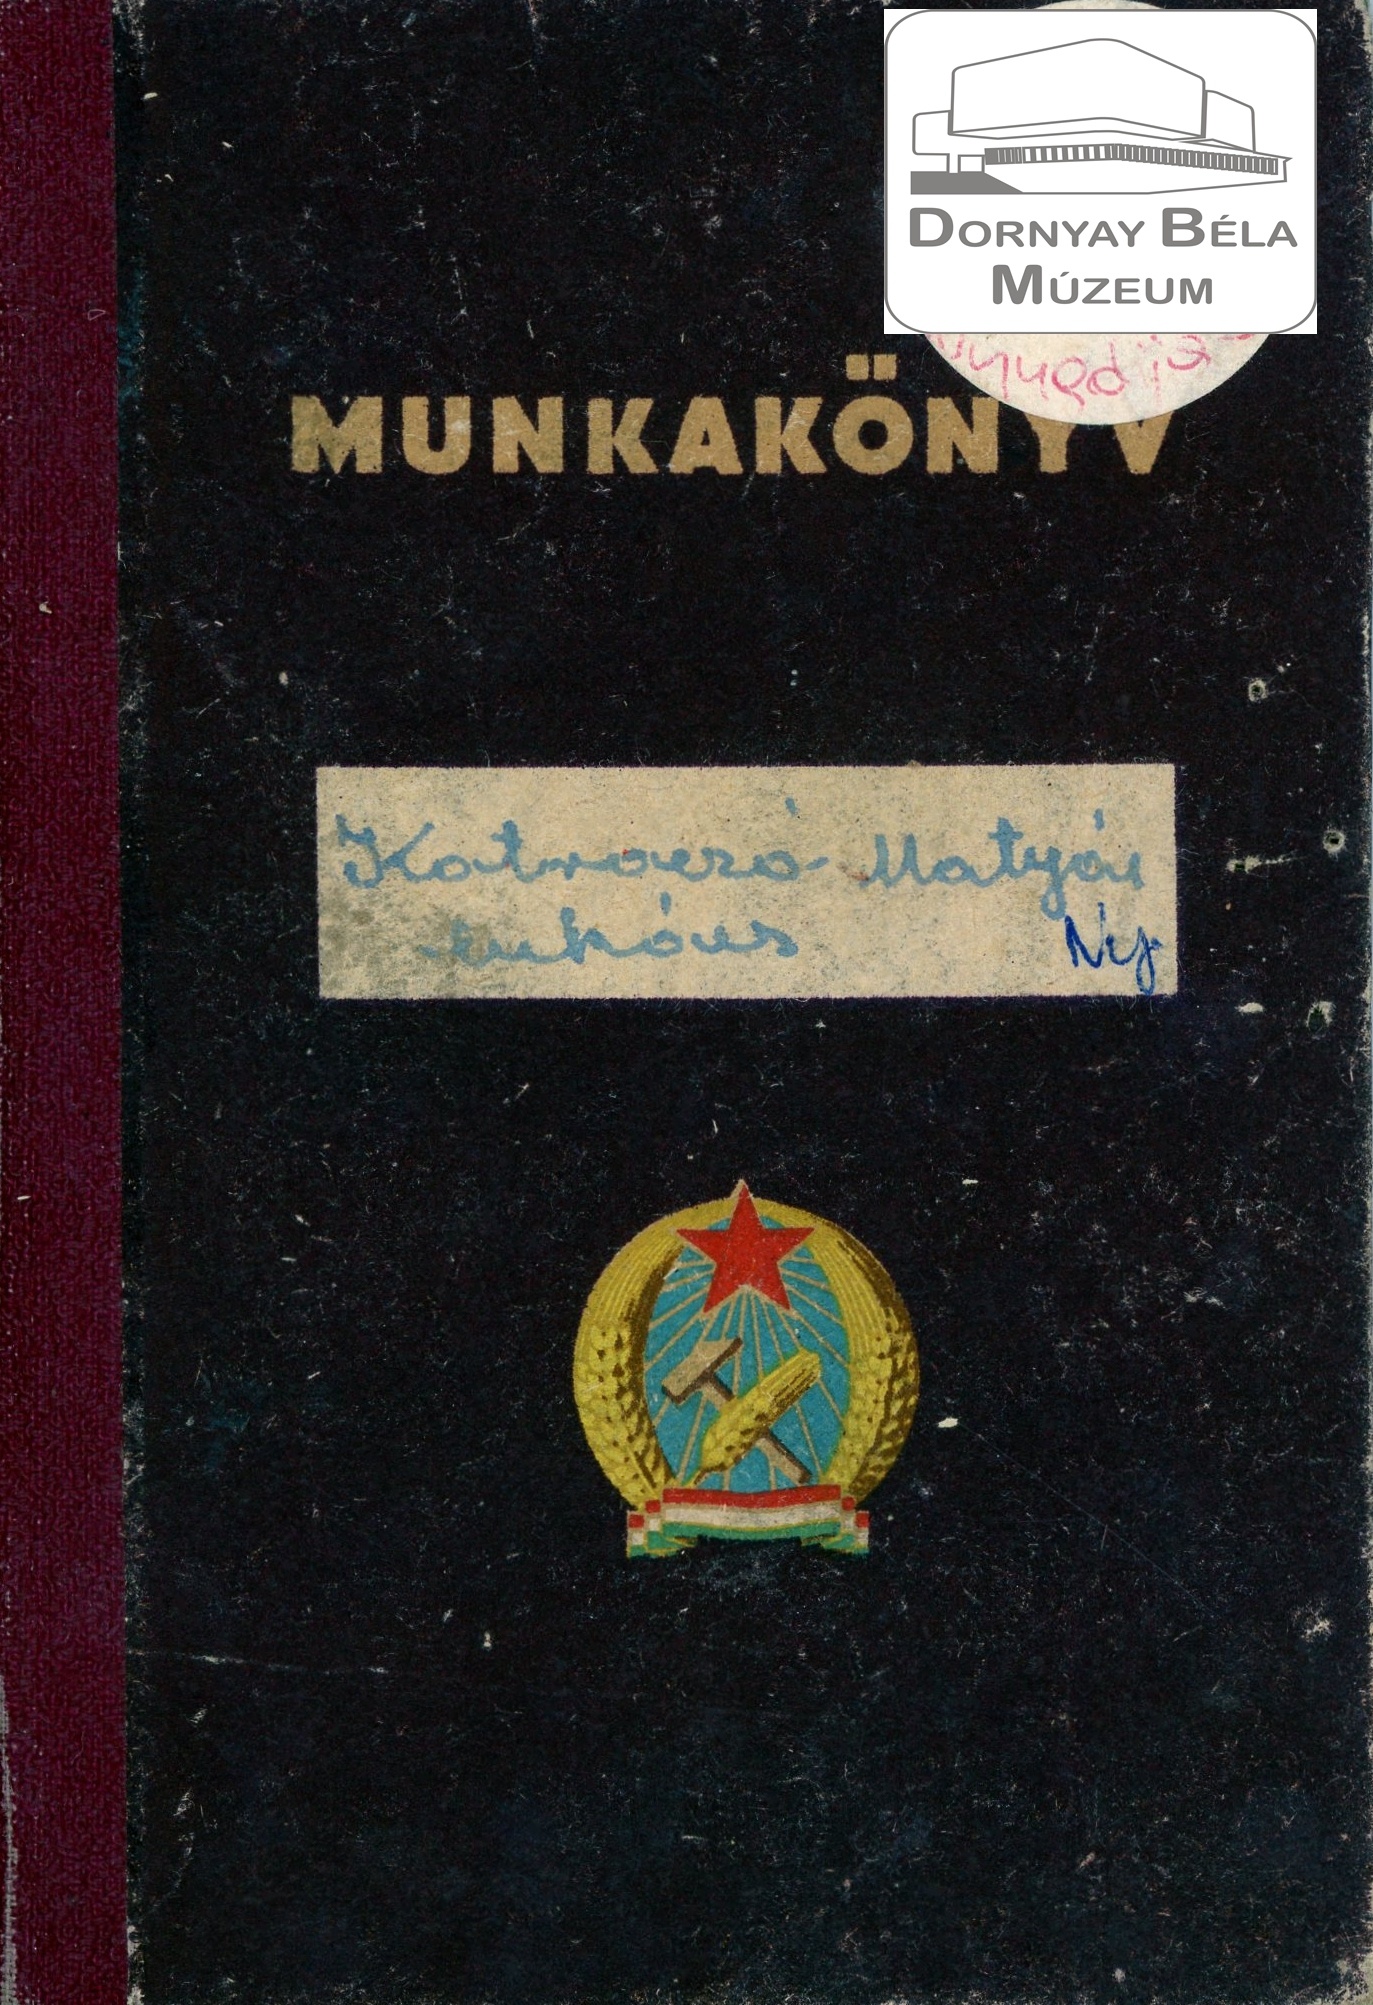 Kotroczó Mátyás Lukács munkakönyve (Dornyay Béla Múzeum, Salgótarján CC BY-NC-SA)